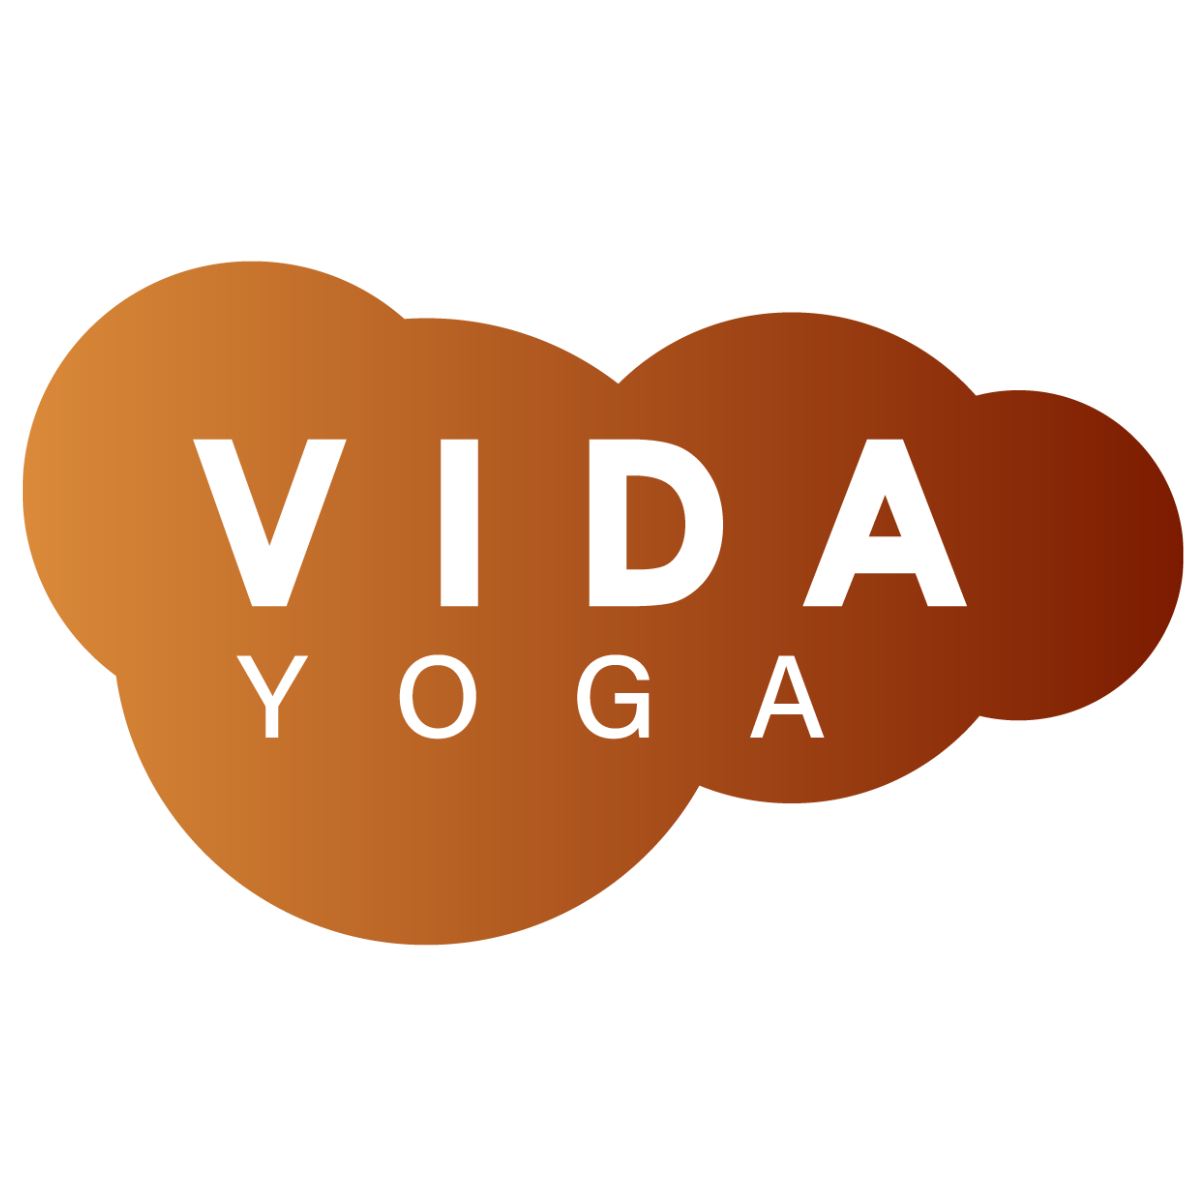 Images Centro de Retiros y Formacion Yoga Vida